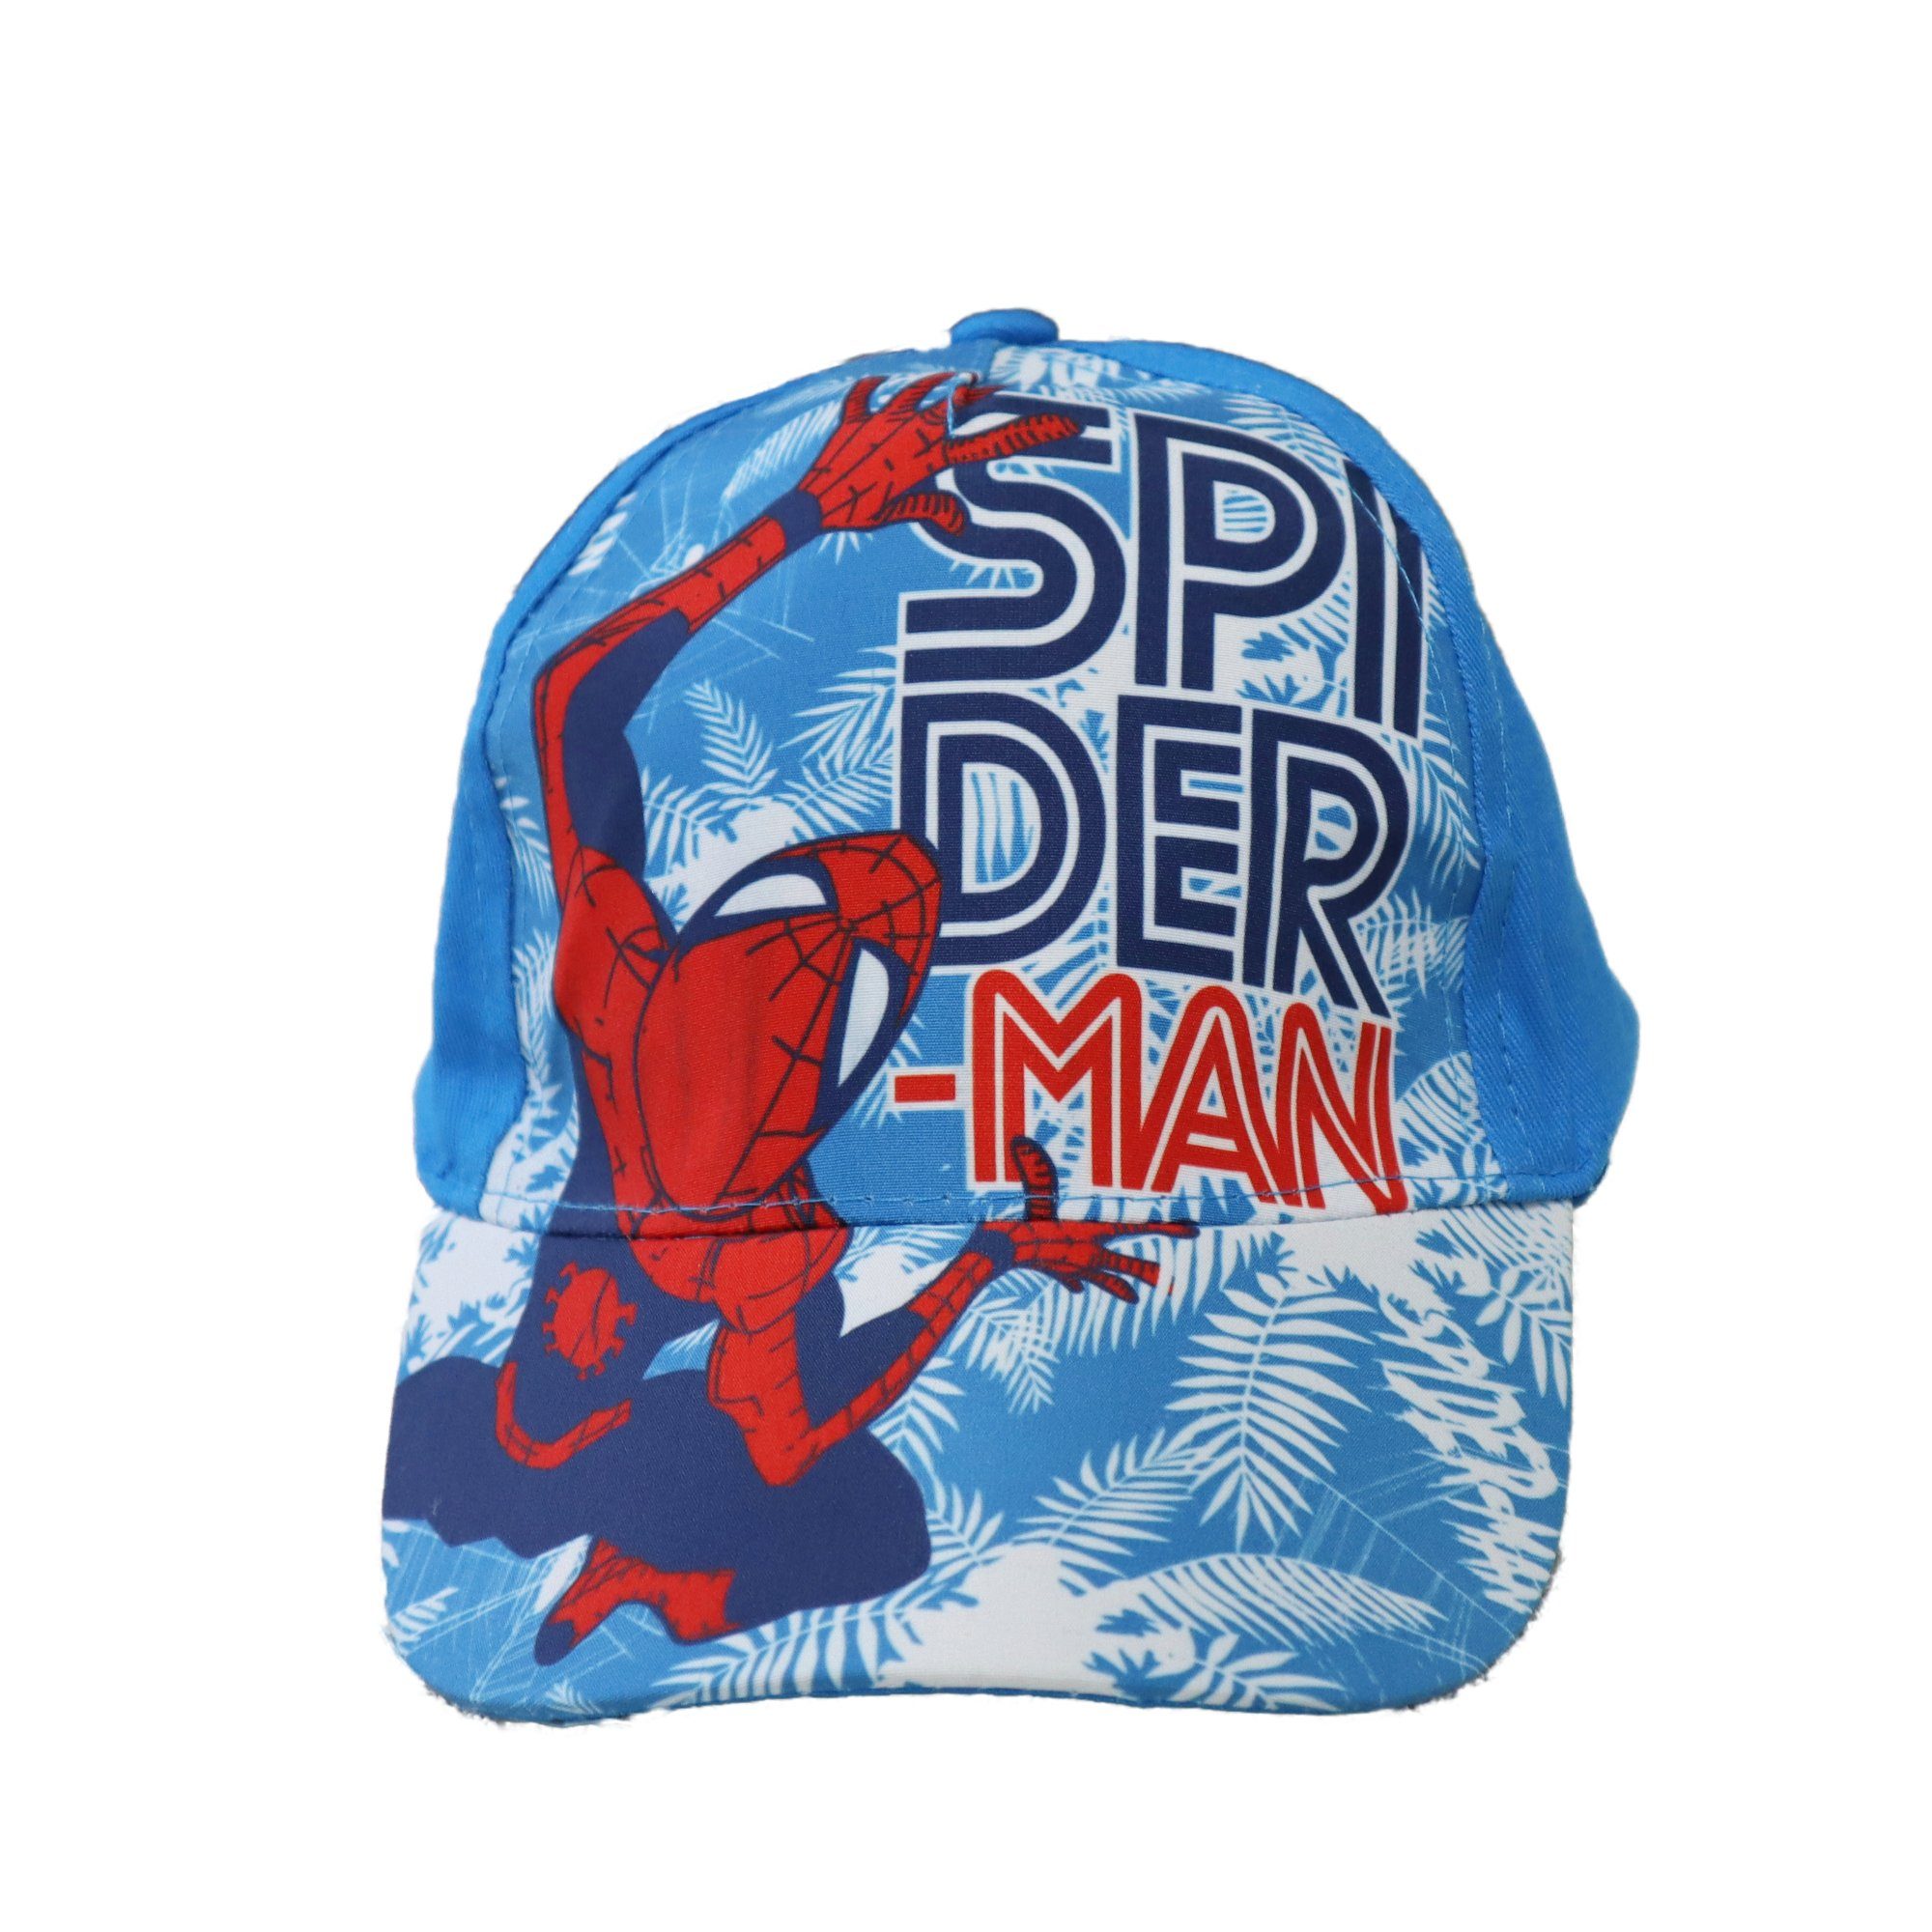 Kinder Blau Rot oder Spiderman MARVEL Cap Cappy 54, oder 52 Baseball Gr.